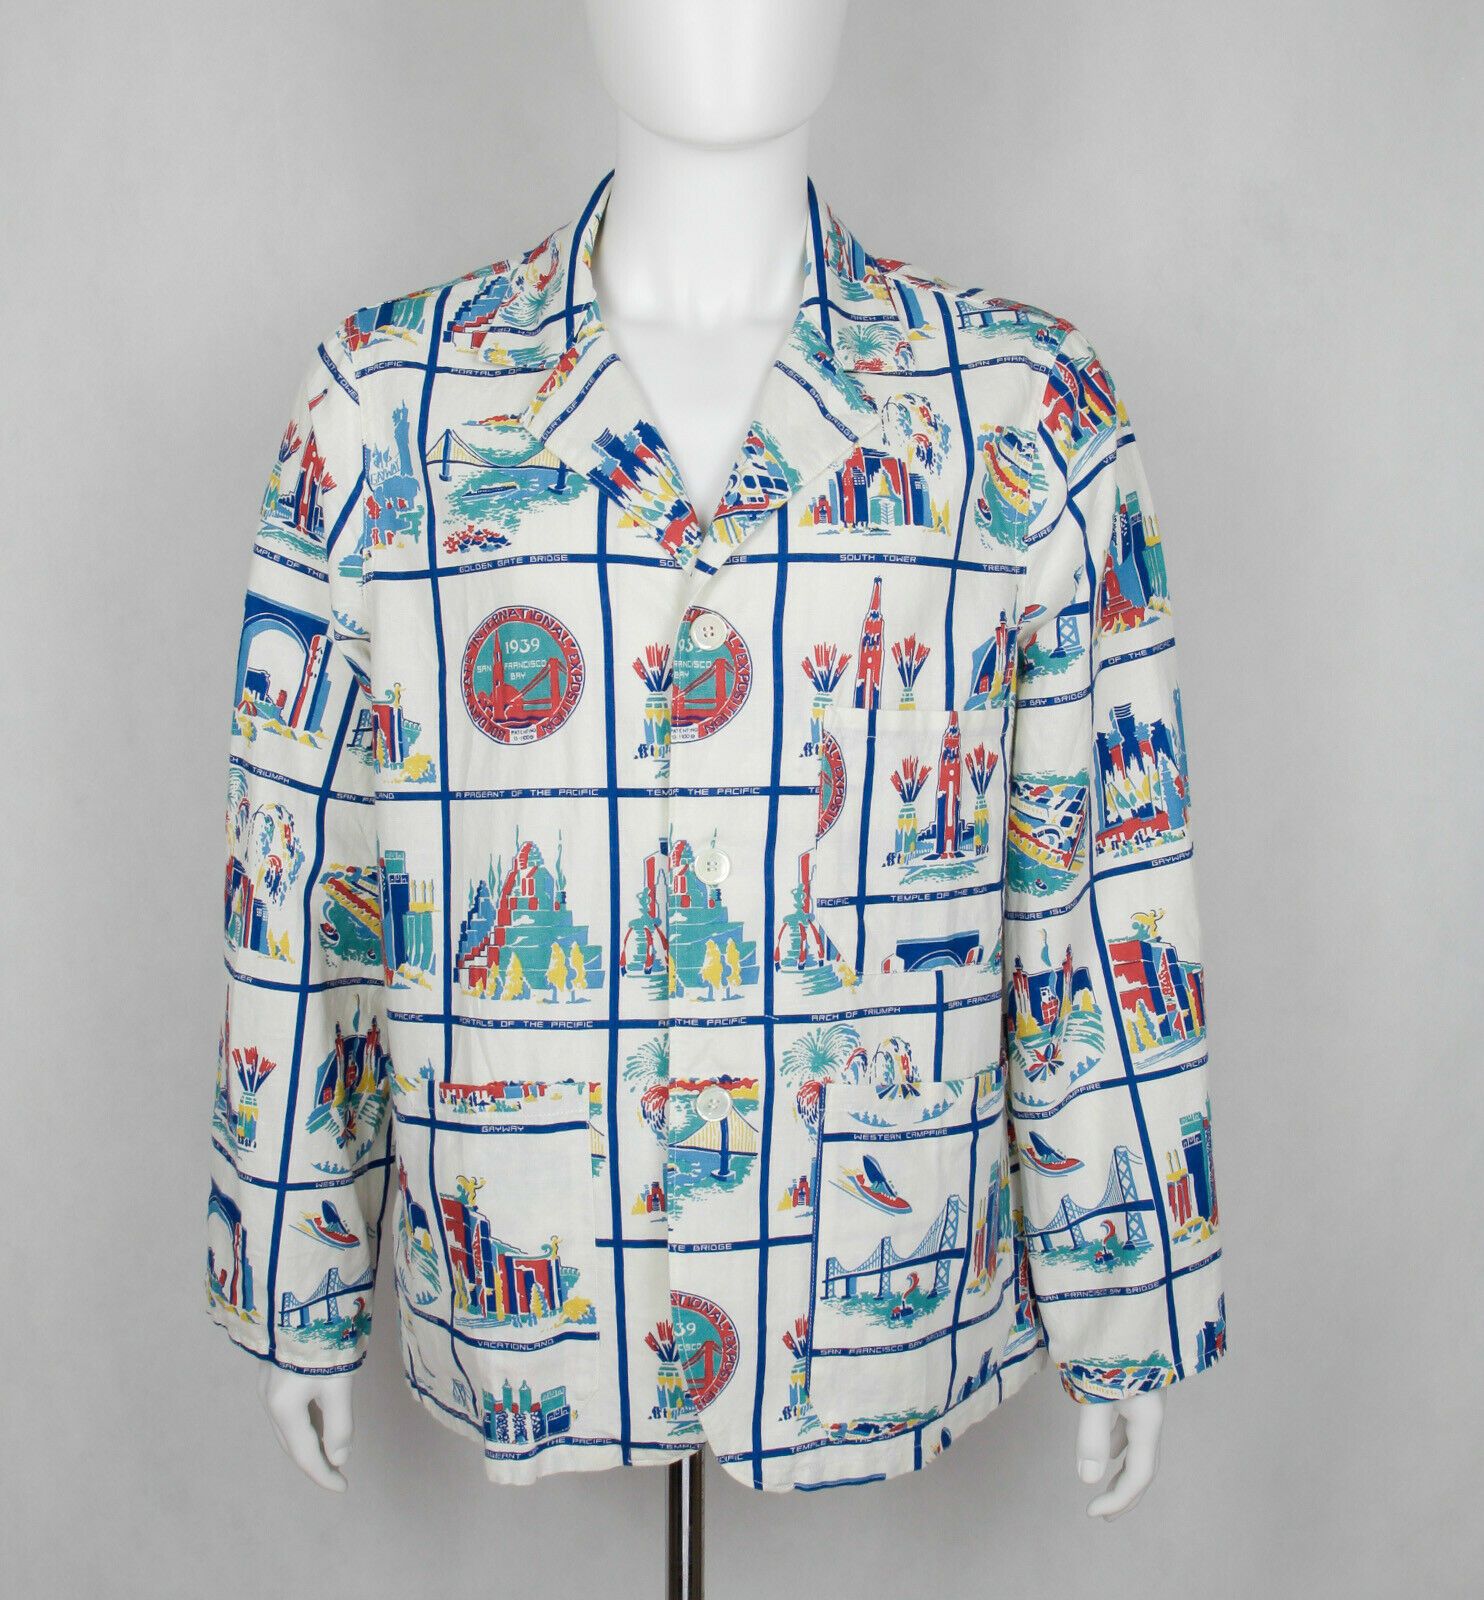 LEVI'S VINTAGE CLOTHING 1930's Gayway Shirt – JEFFREY MARK